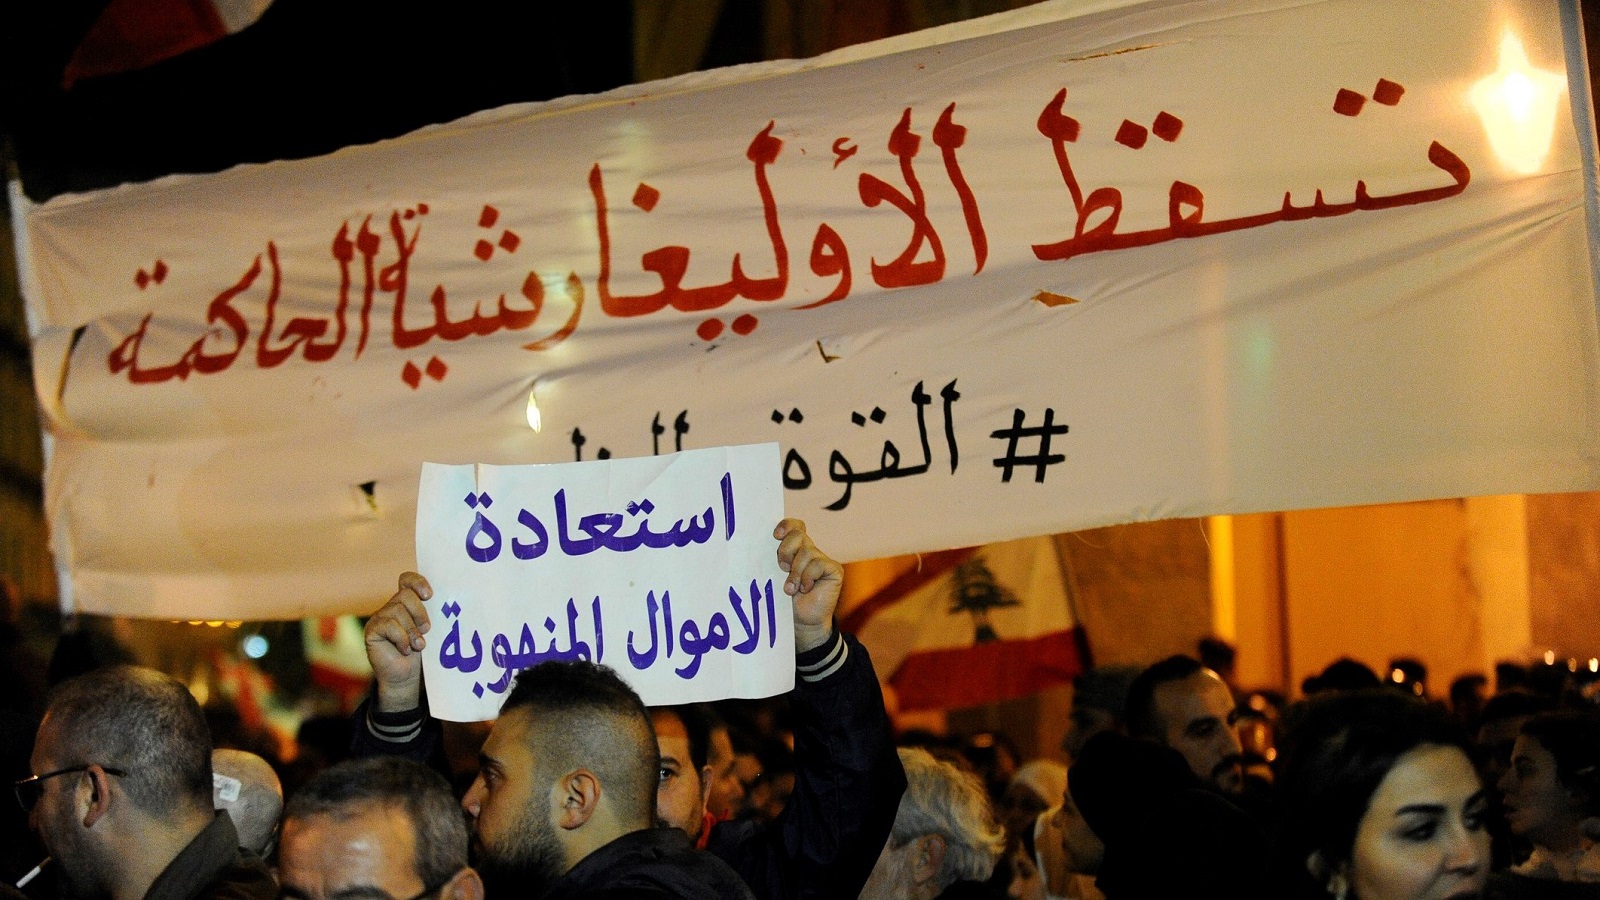 "جمعة الغضب" يكرّس سيطرة الثورة على الشارع